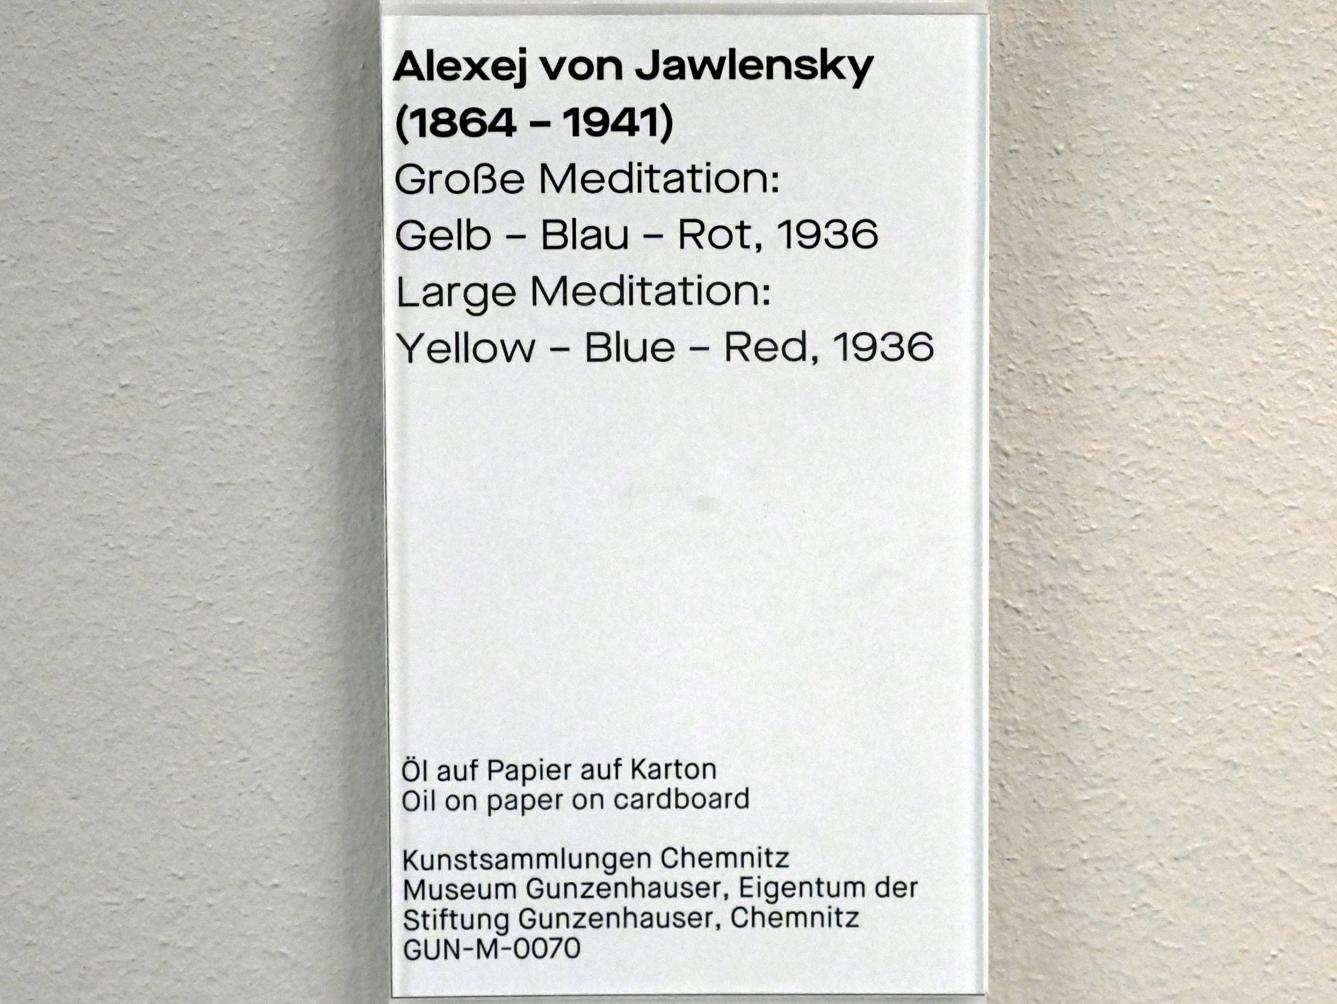 Alexej von Jawlensky (1893–1938), Große Meditation: Gelb - Blau - Rot, Chemnitz, Museum Gunzenhauser, Saal 3.9, 1936, Bild 2/2